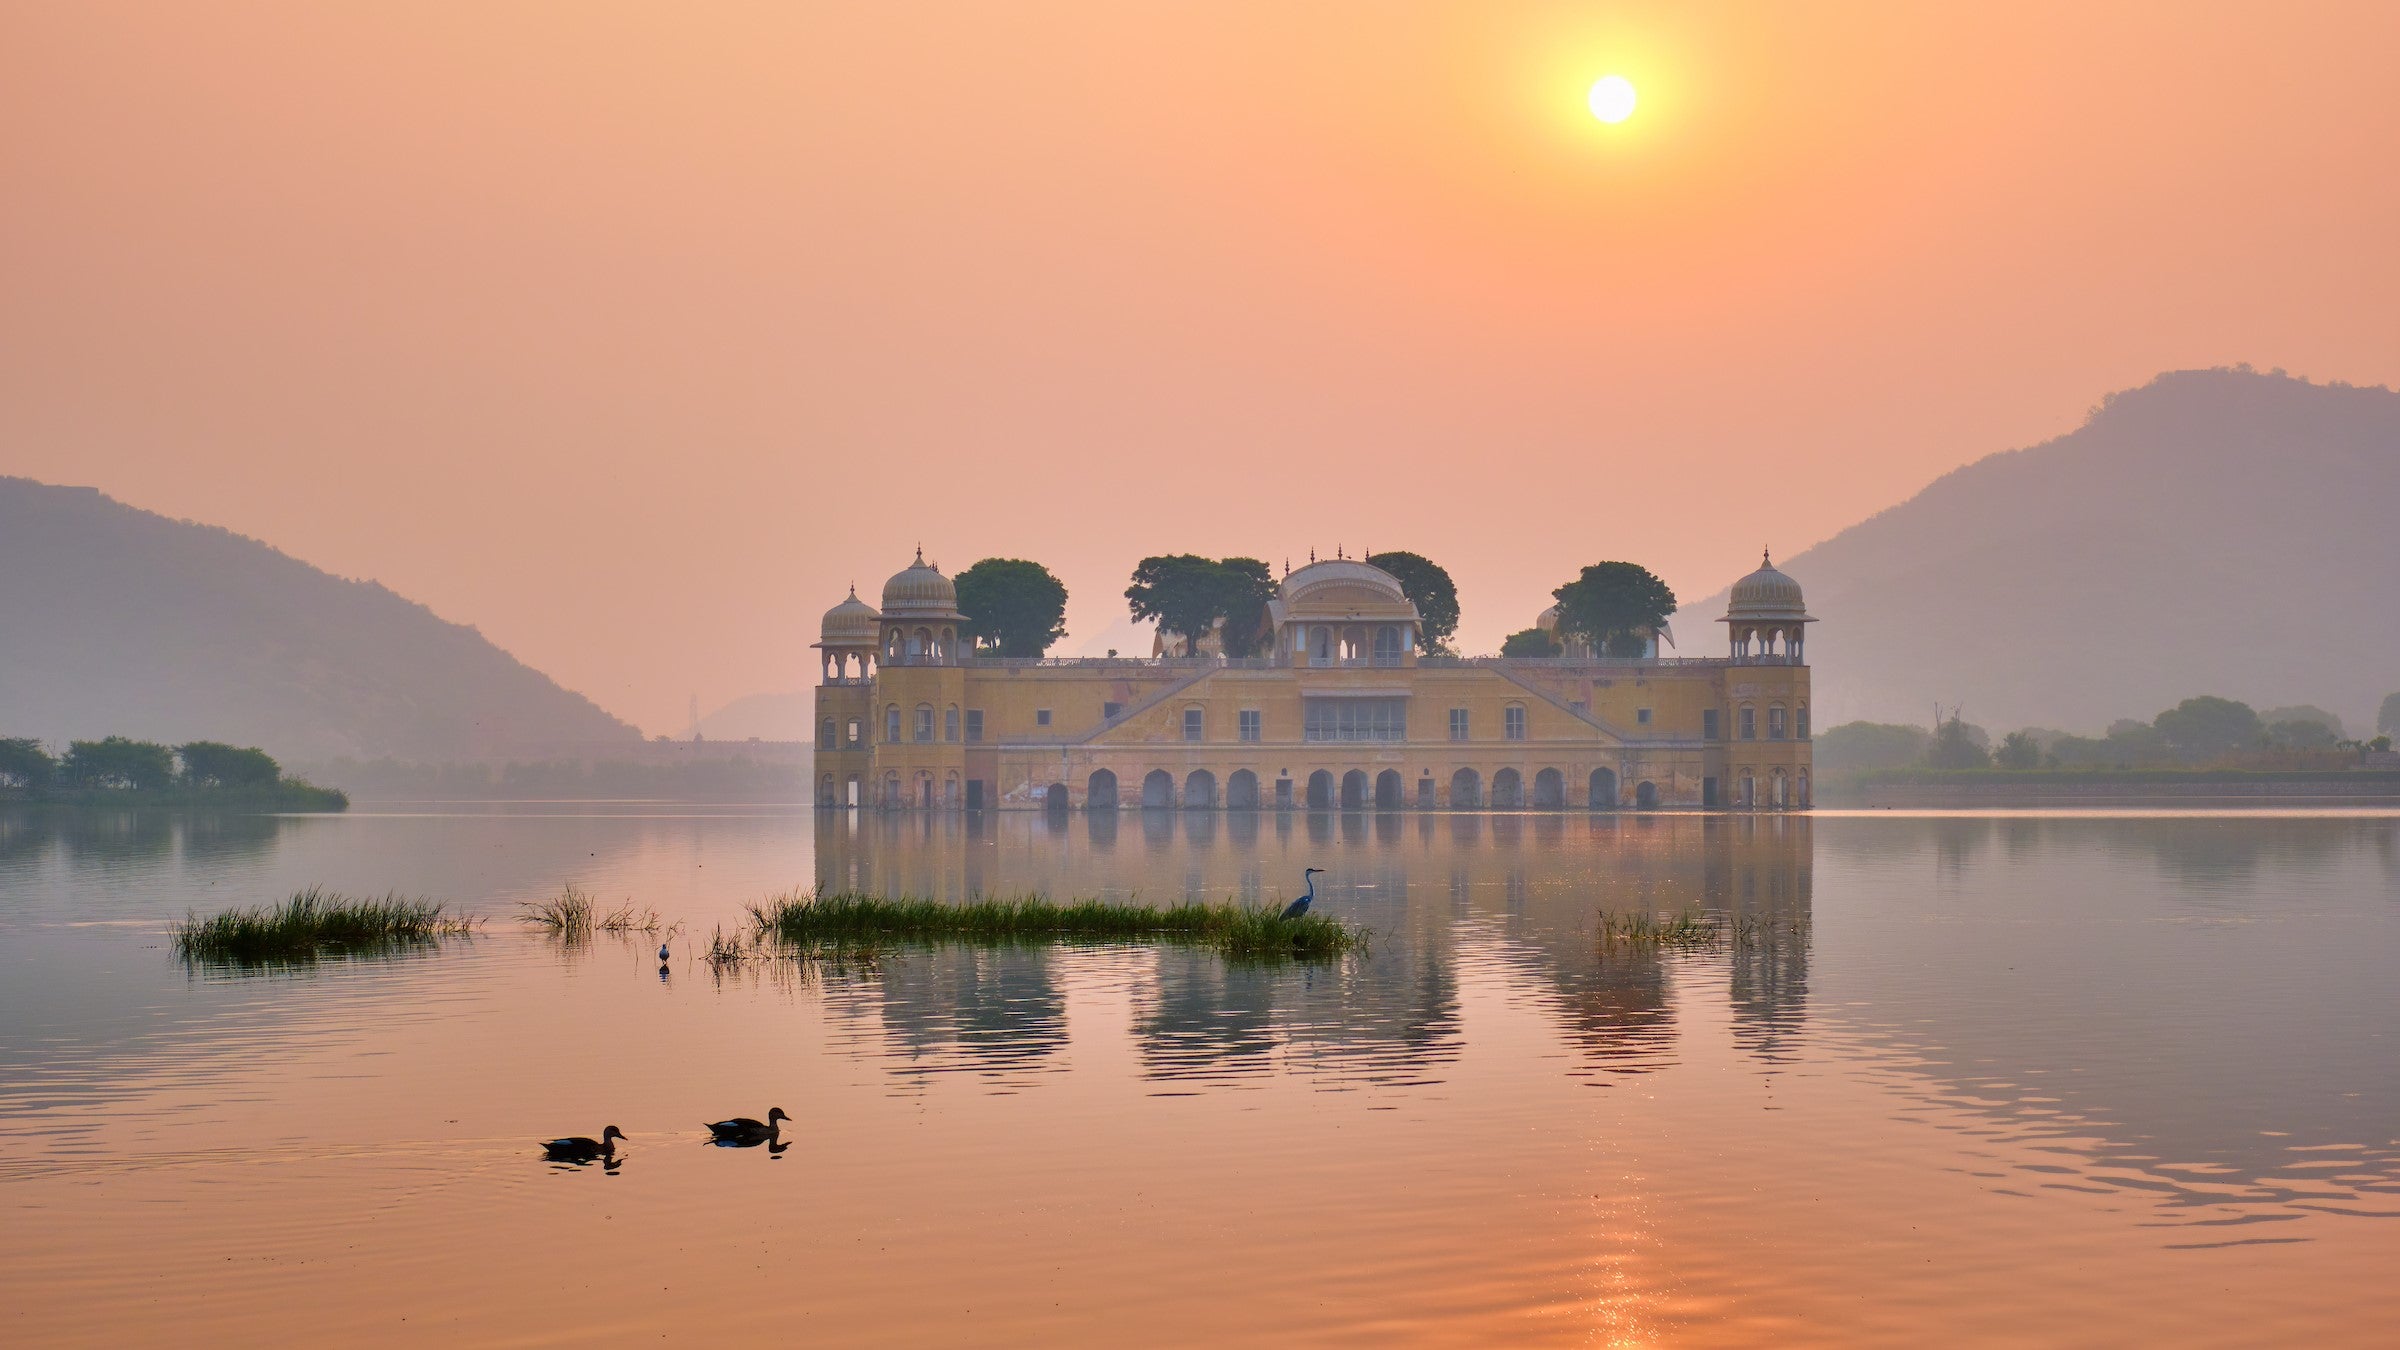 Jaipur’s beautiful Water Palace, Jal Mahal